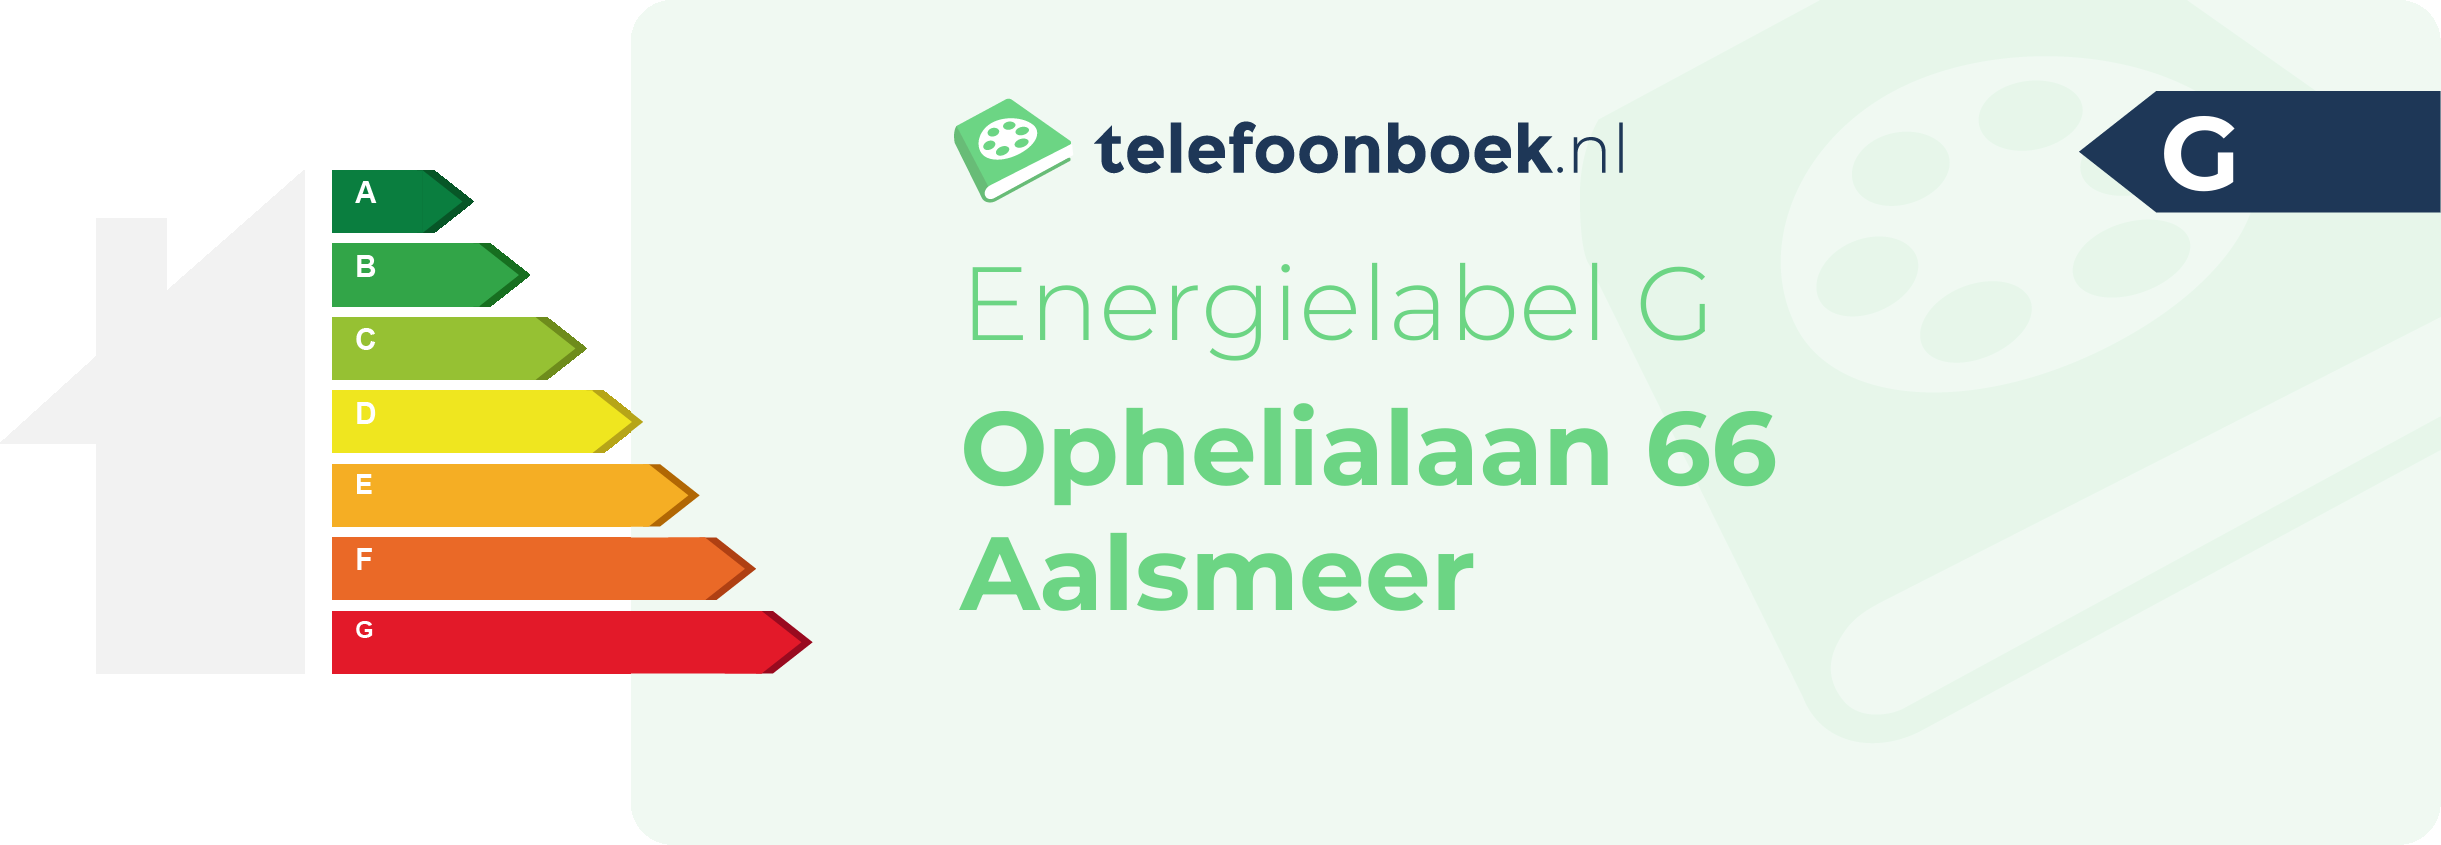 Energielabel Ophelialaan 66 Aalsmeer